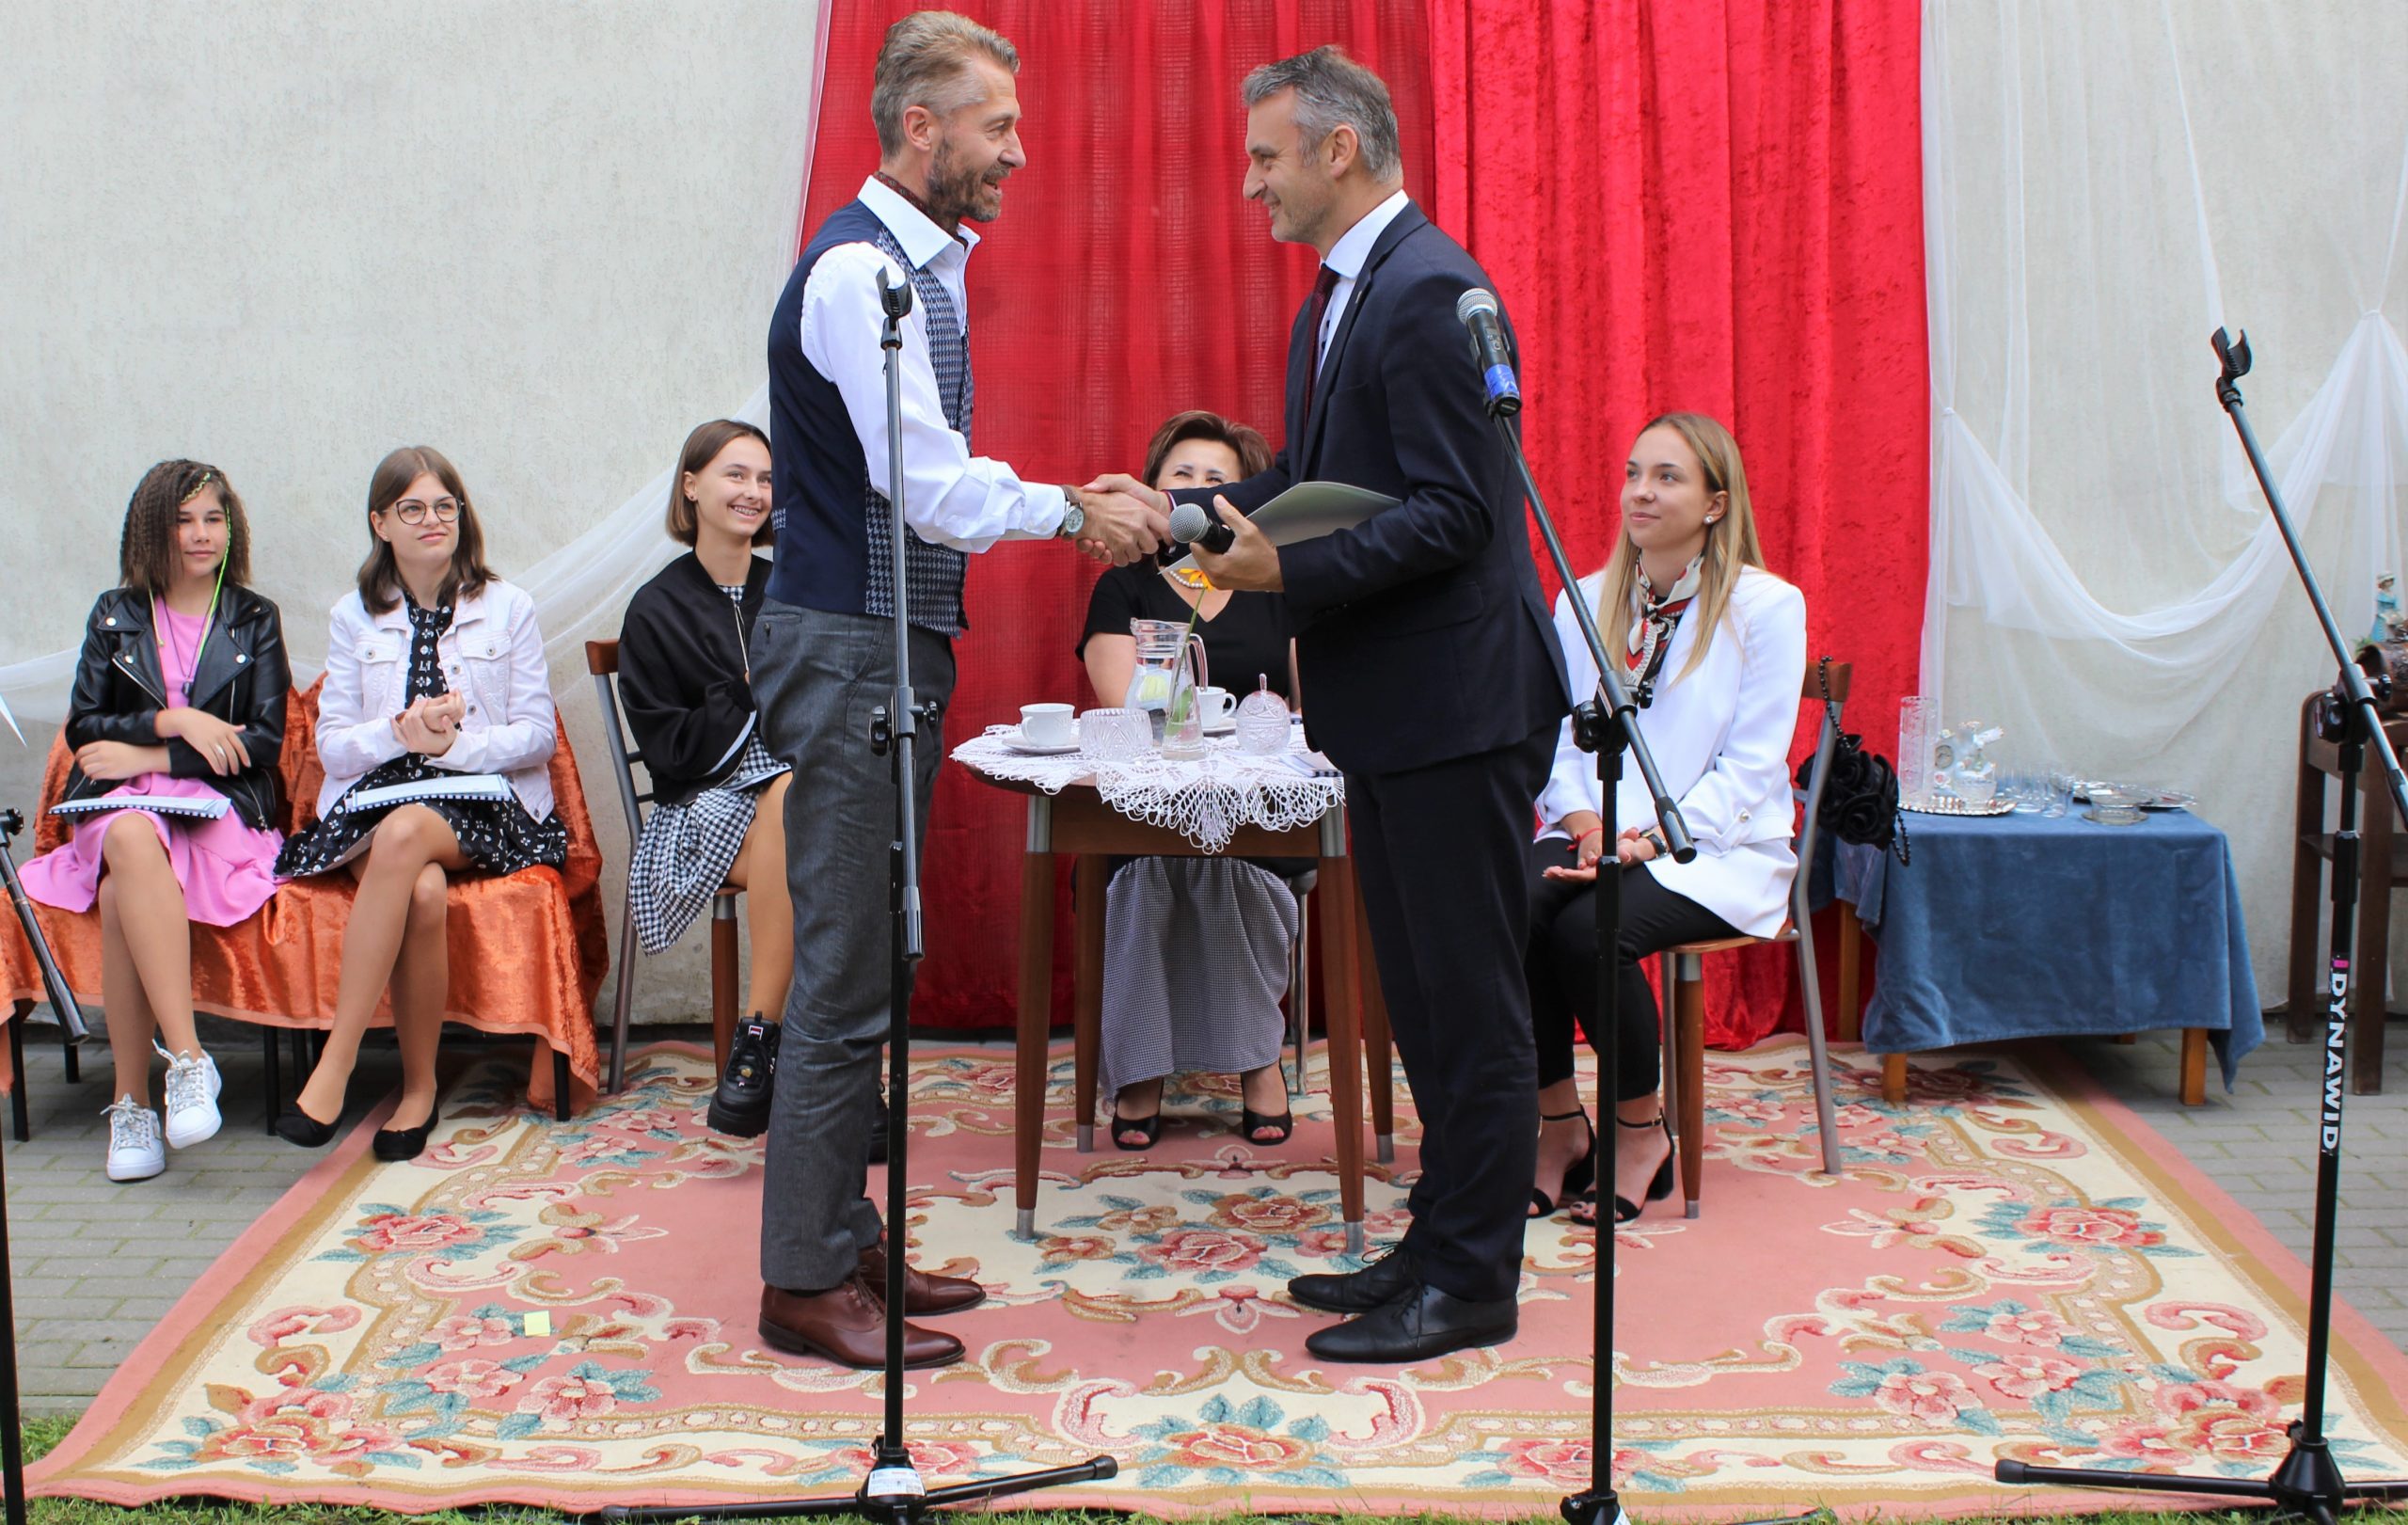 Burmistrz miasta Sierpca Jarosław Perzyński składa gratulacje panu Markowi Zdrojewskiemu.